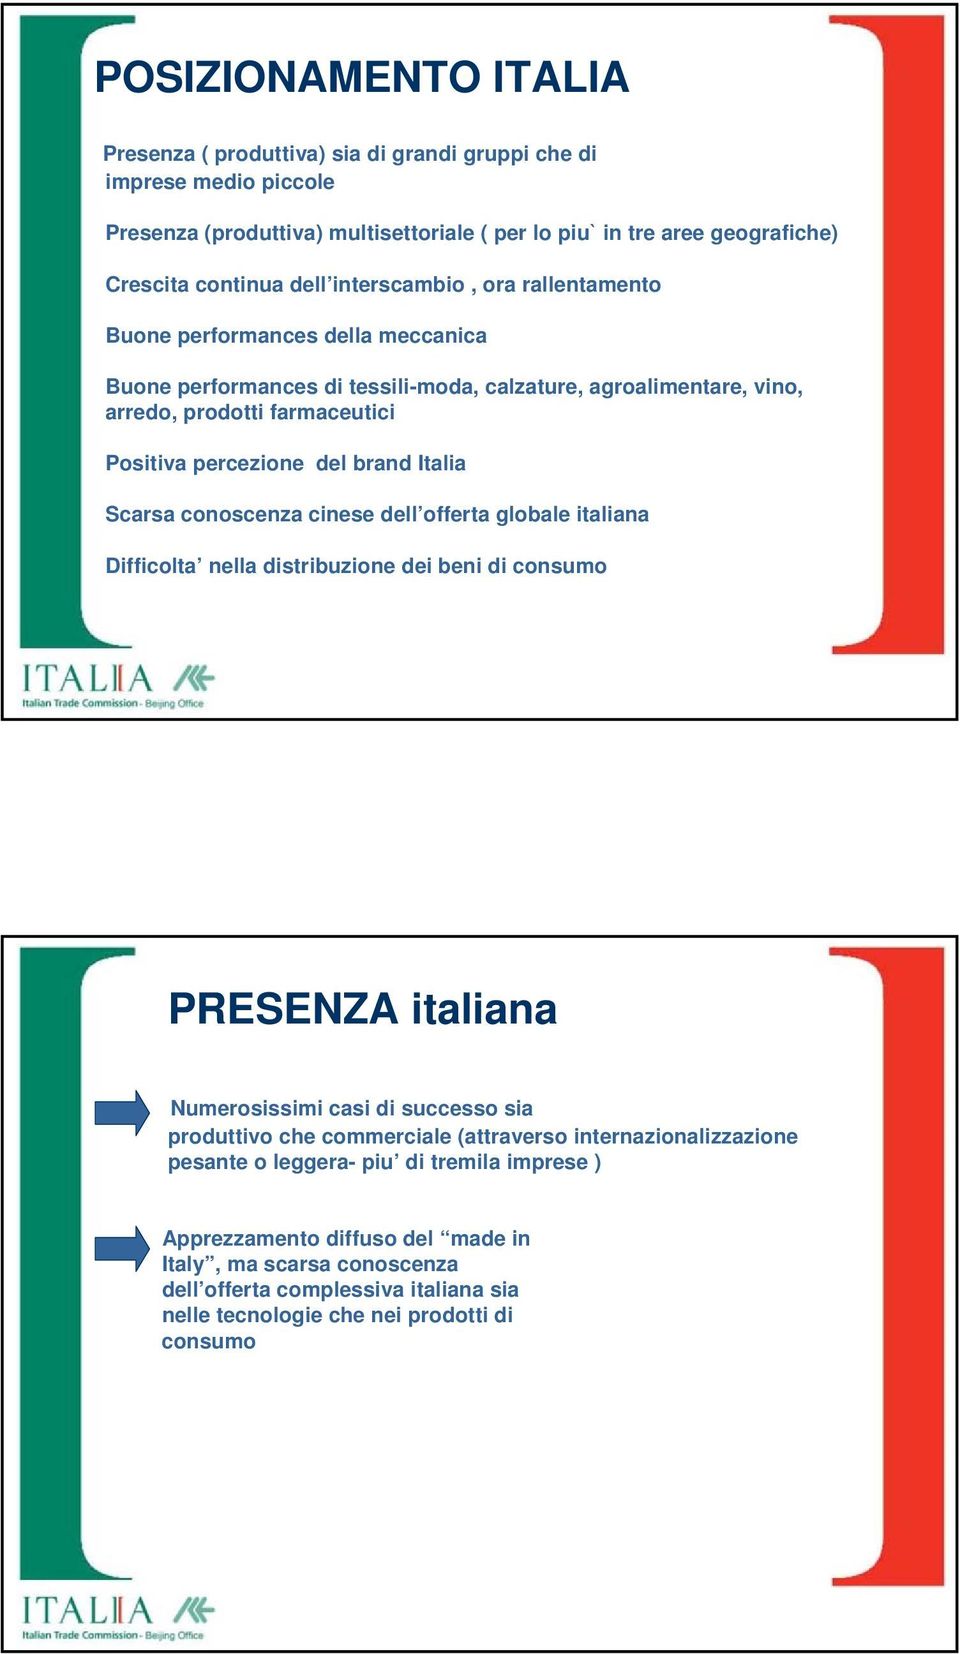 Italia Scarsa conoscenza cinese dell offerta globale italiana Difficolta nella distribuzione dei beni di consumo PRESENZA italiana Numerosissimi casi di successo sia produttivo che commerciale